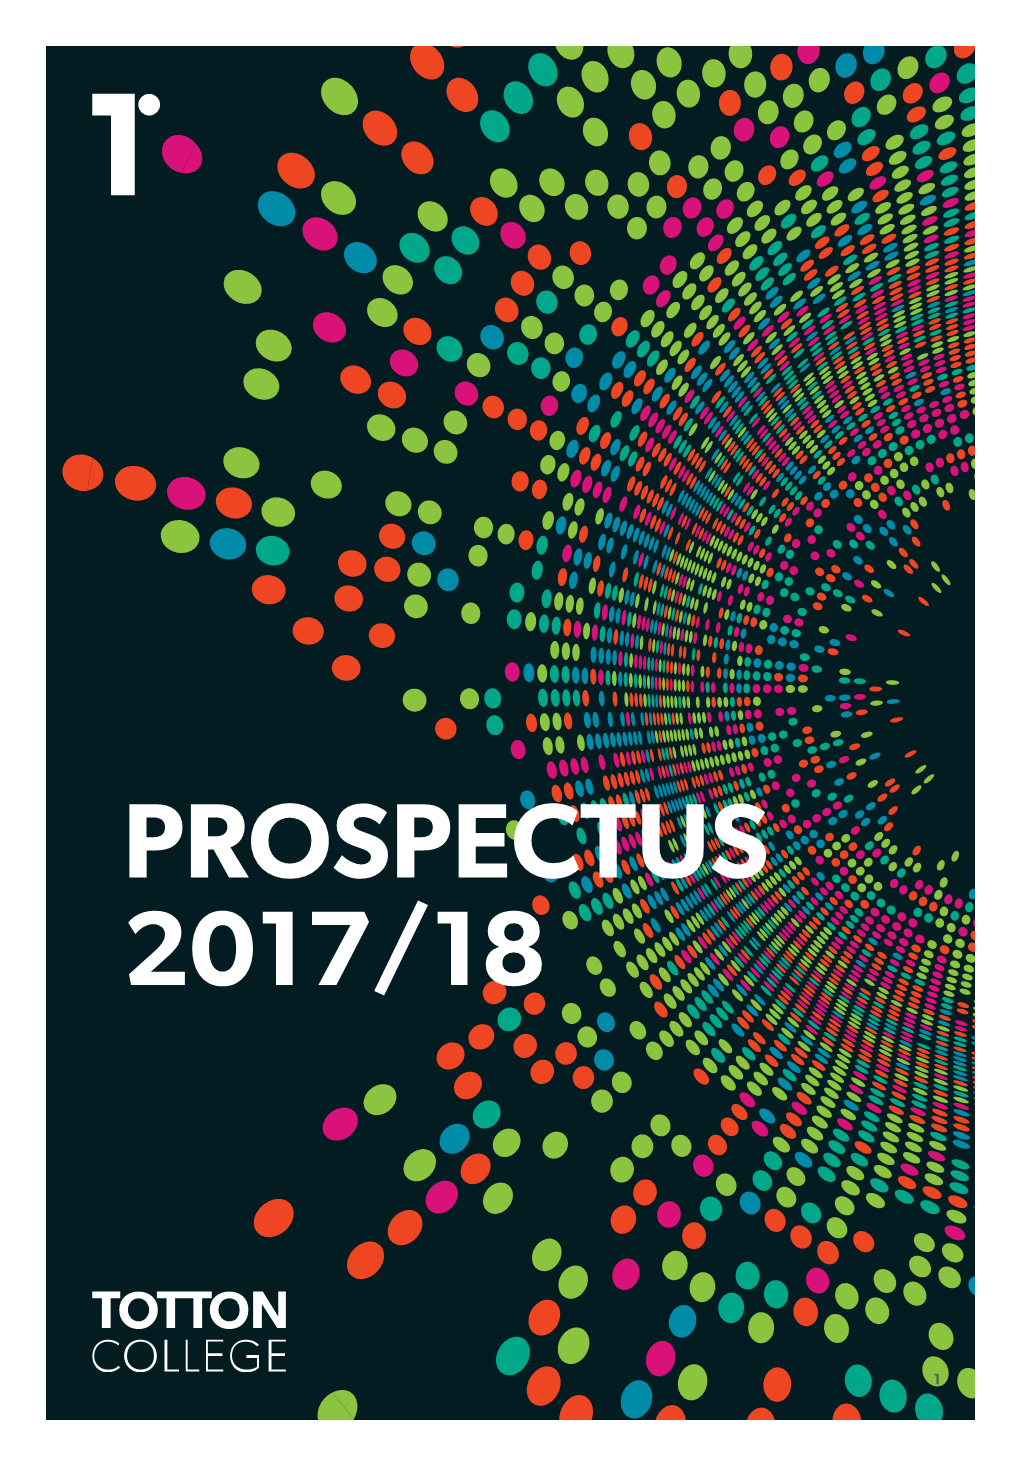 Prospectus 2017/18